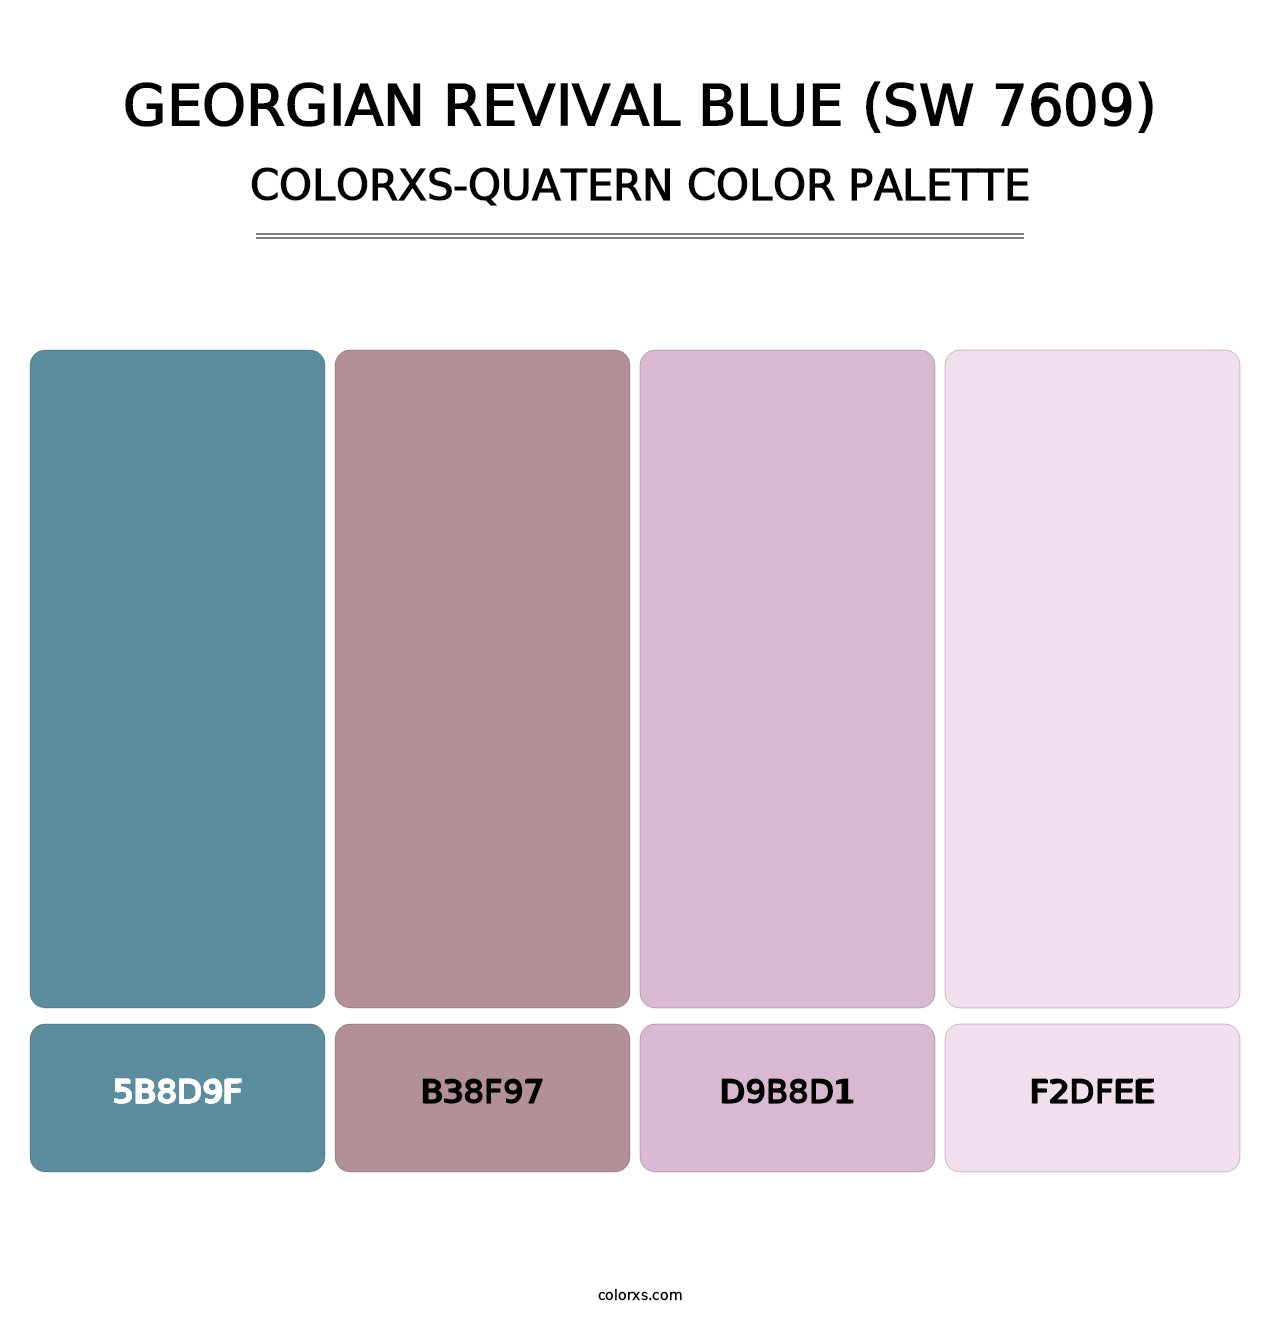 Georgian Revival Blue (SW 7609) - Colorxs Quatern Palette